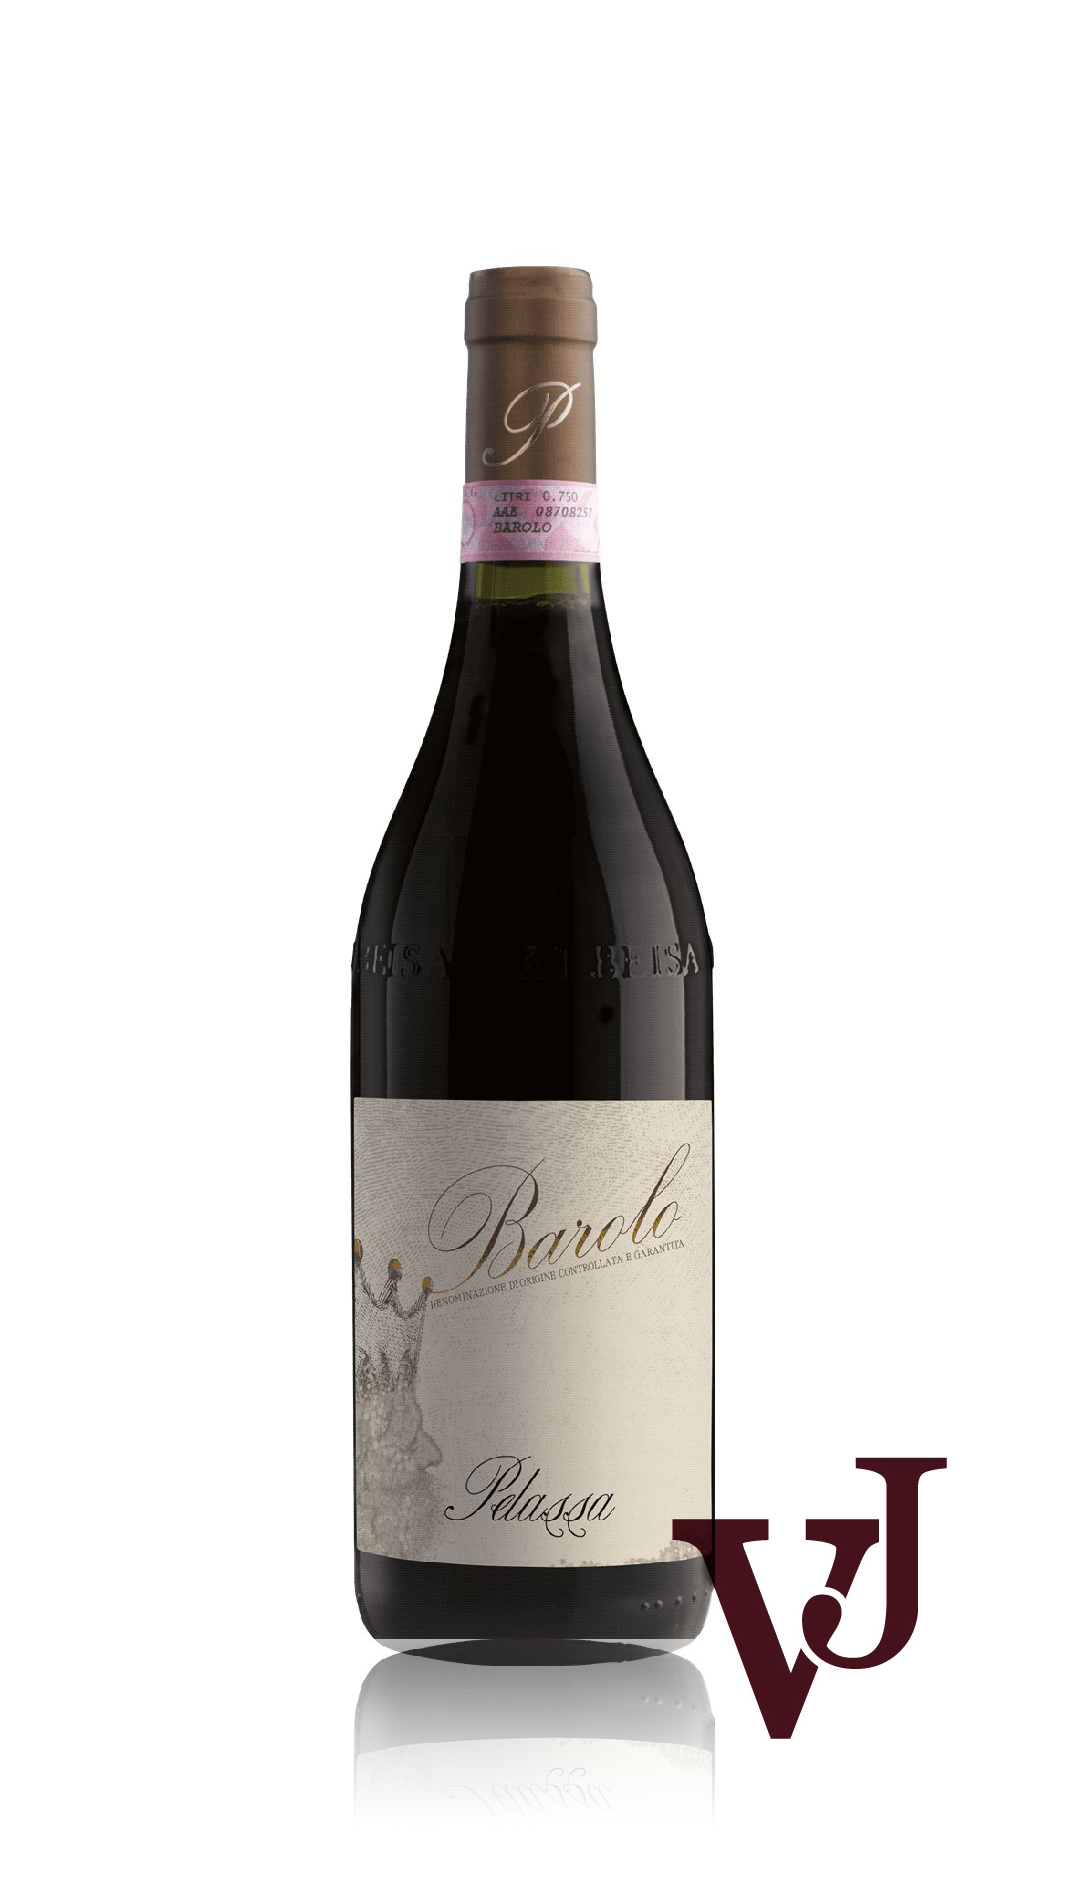 Rött Vin - Pelassa Barolo artikel nummer 5430201 från producenten Azienda Agricola DANIELE PELASSA från området Italien